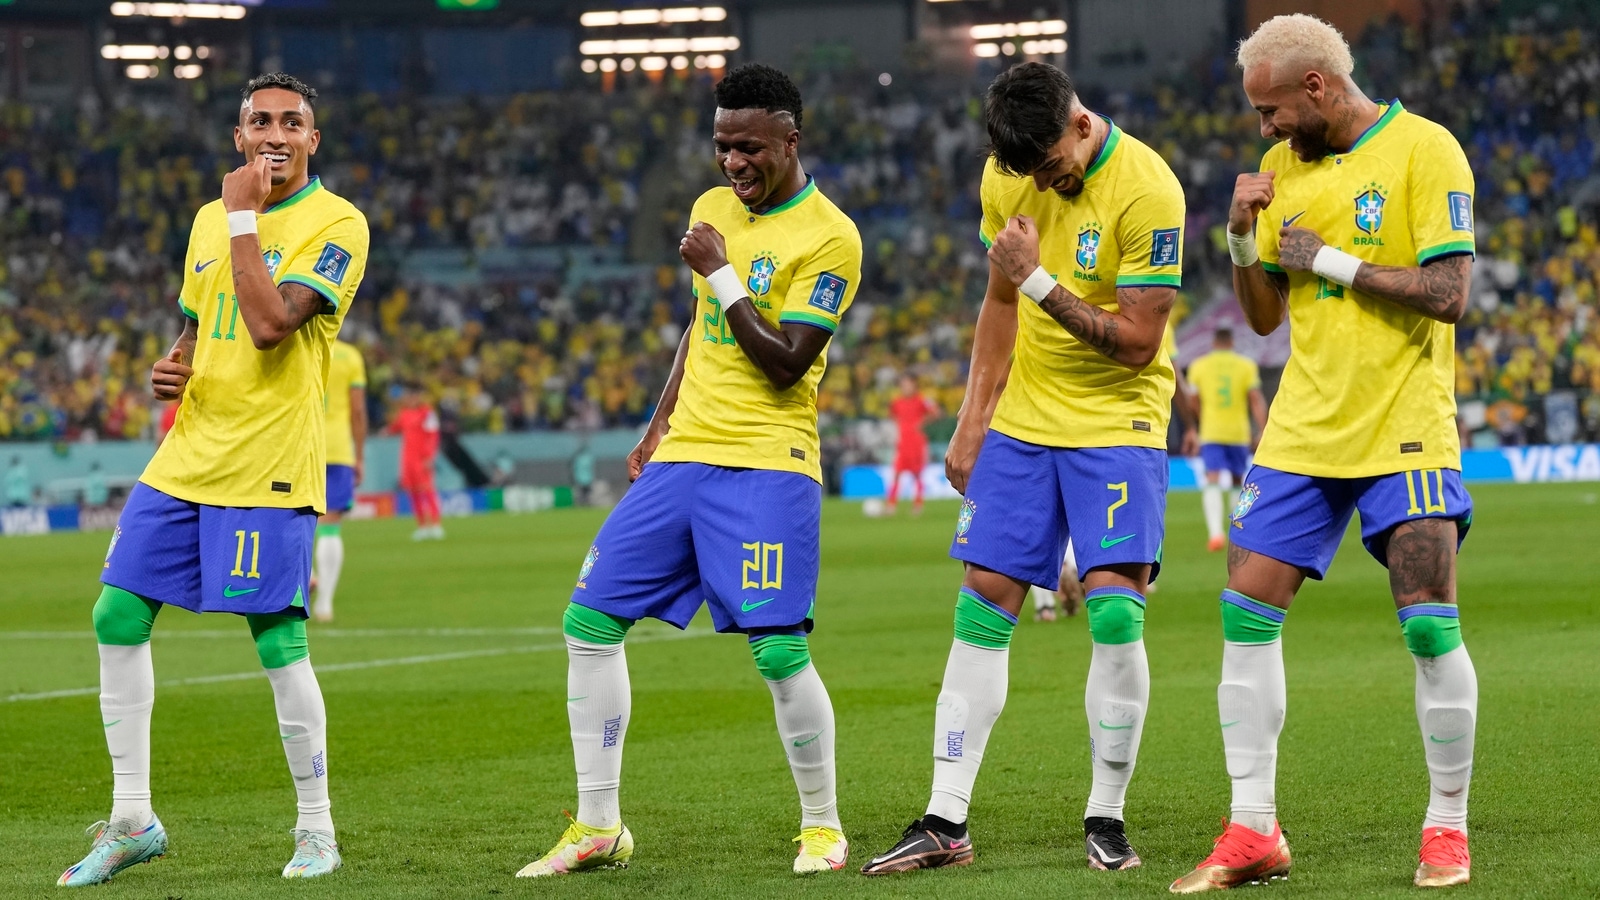 ‘Lighten up you stiff boring man’: Roy Keane trolled mercilessly for branding Brazil’s celebration ‘disrespectful’